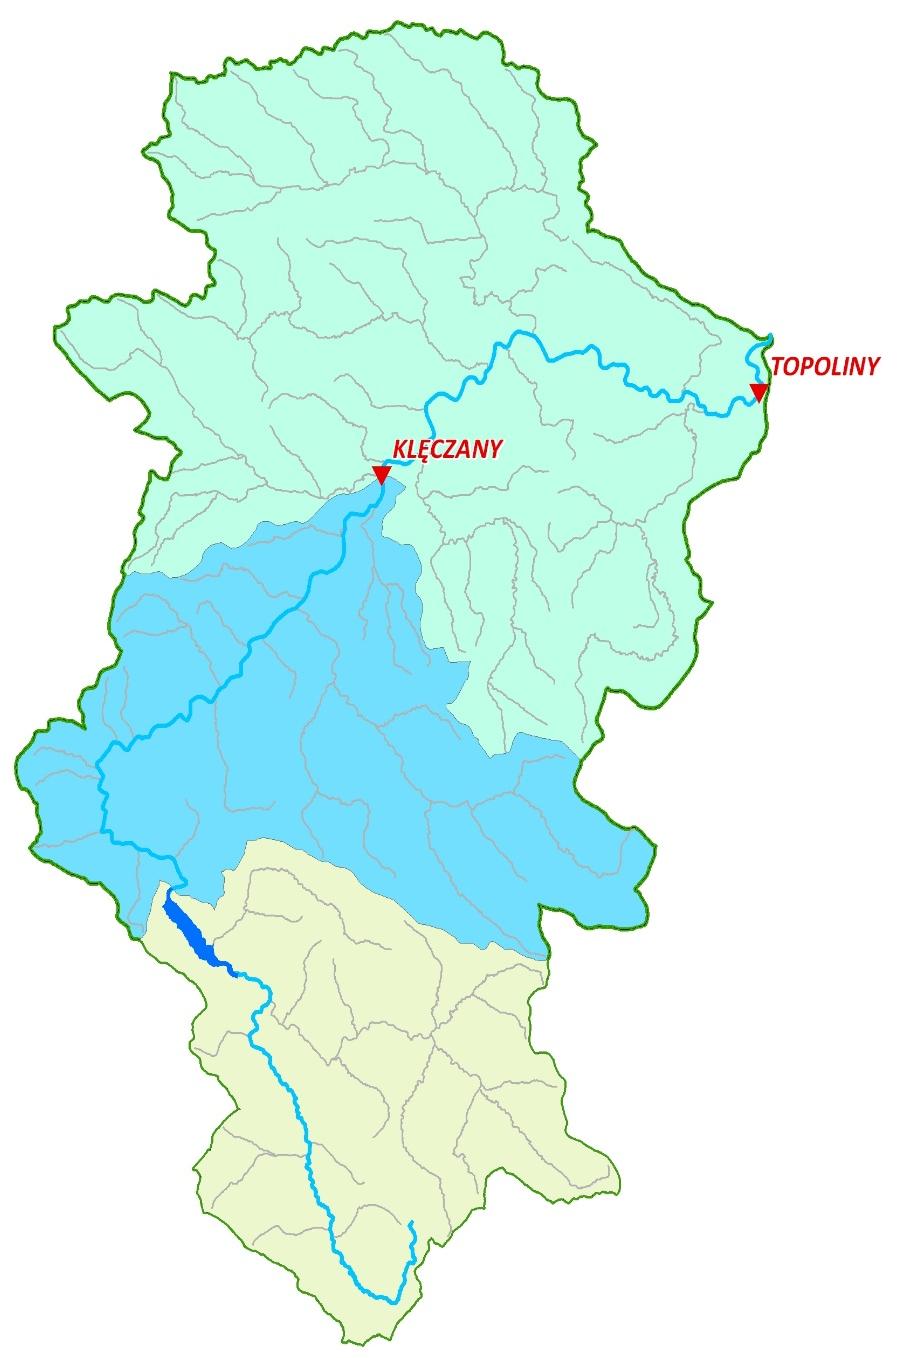 2 Zlewnia rzeki Ropa po zaporę Klimkówka 21 km 2 49 km 2 484 km 2 GORLICE Biecz 974 km 2 Zlewnia